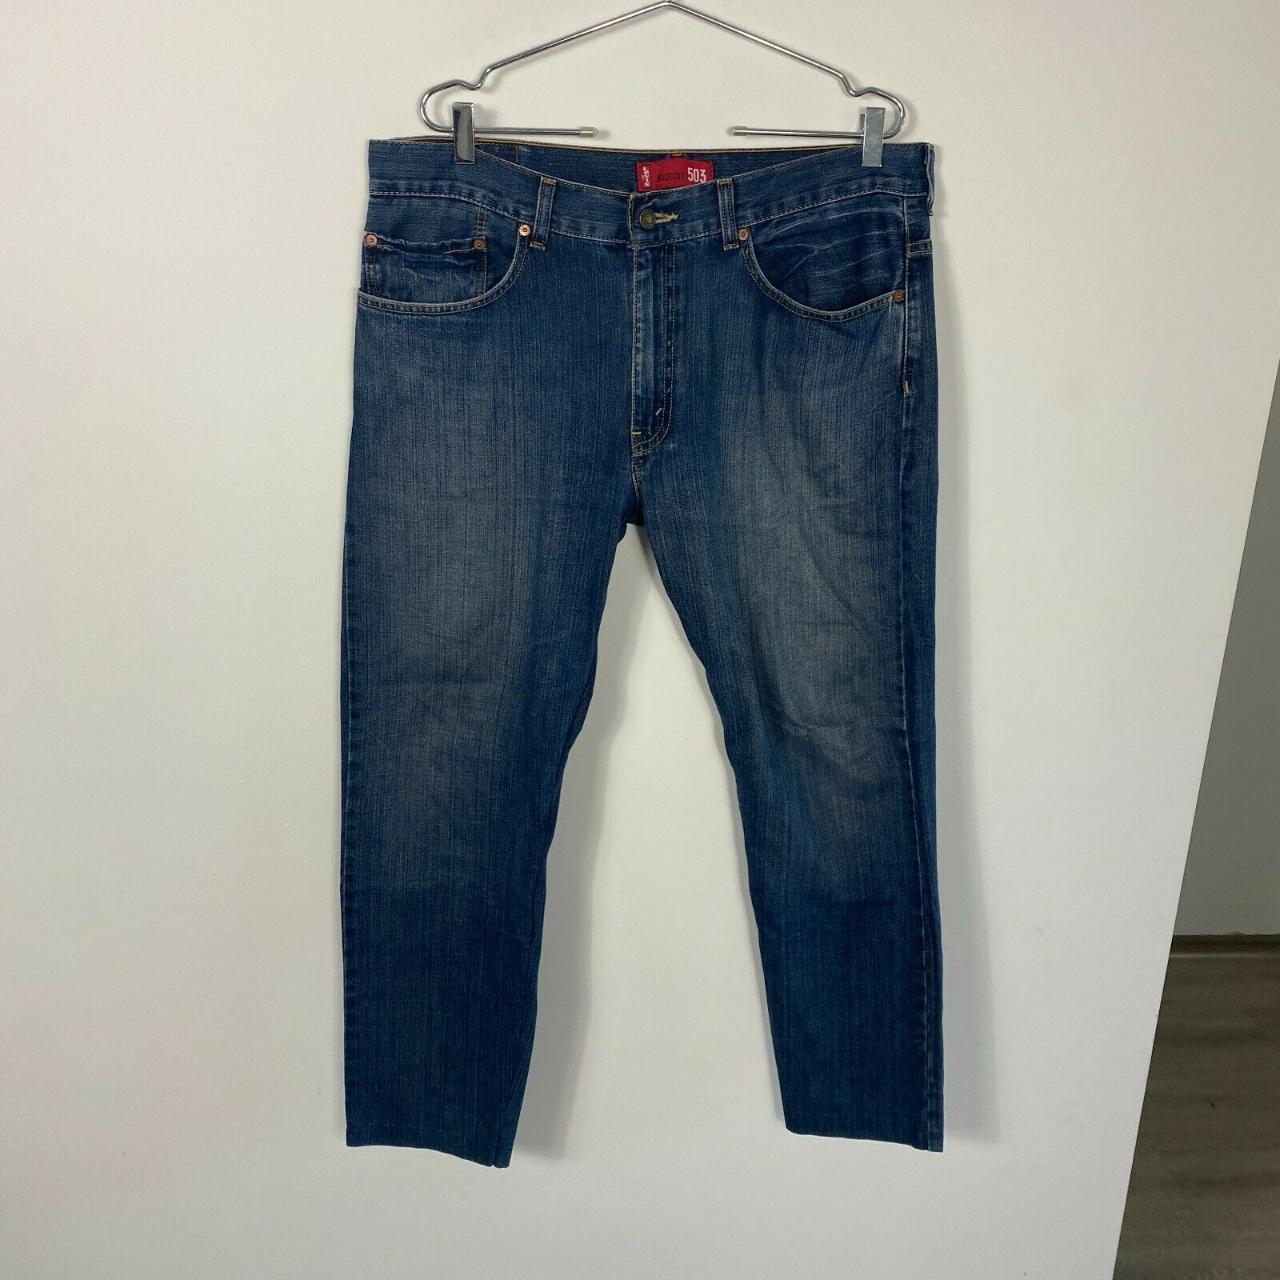 Levi's 503 Blue Jeans Mens Size 38x32 Straight Fit... - Depop